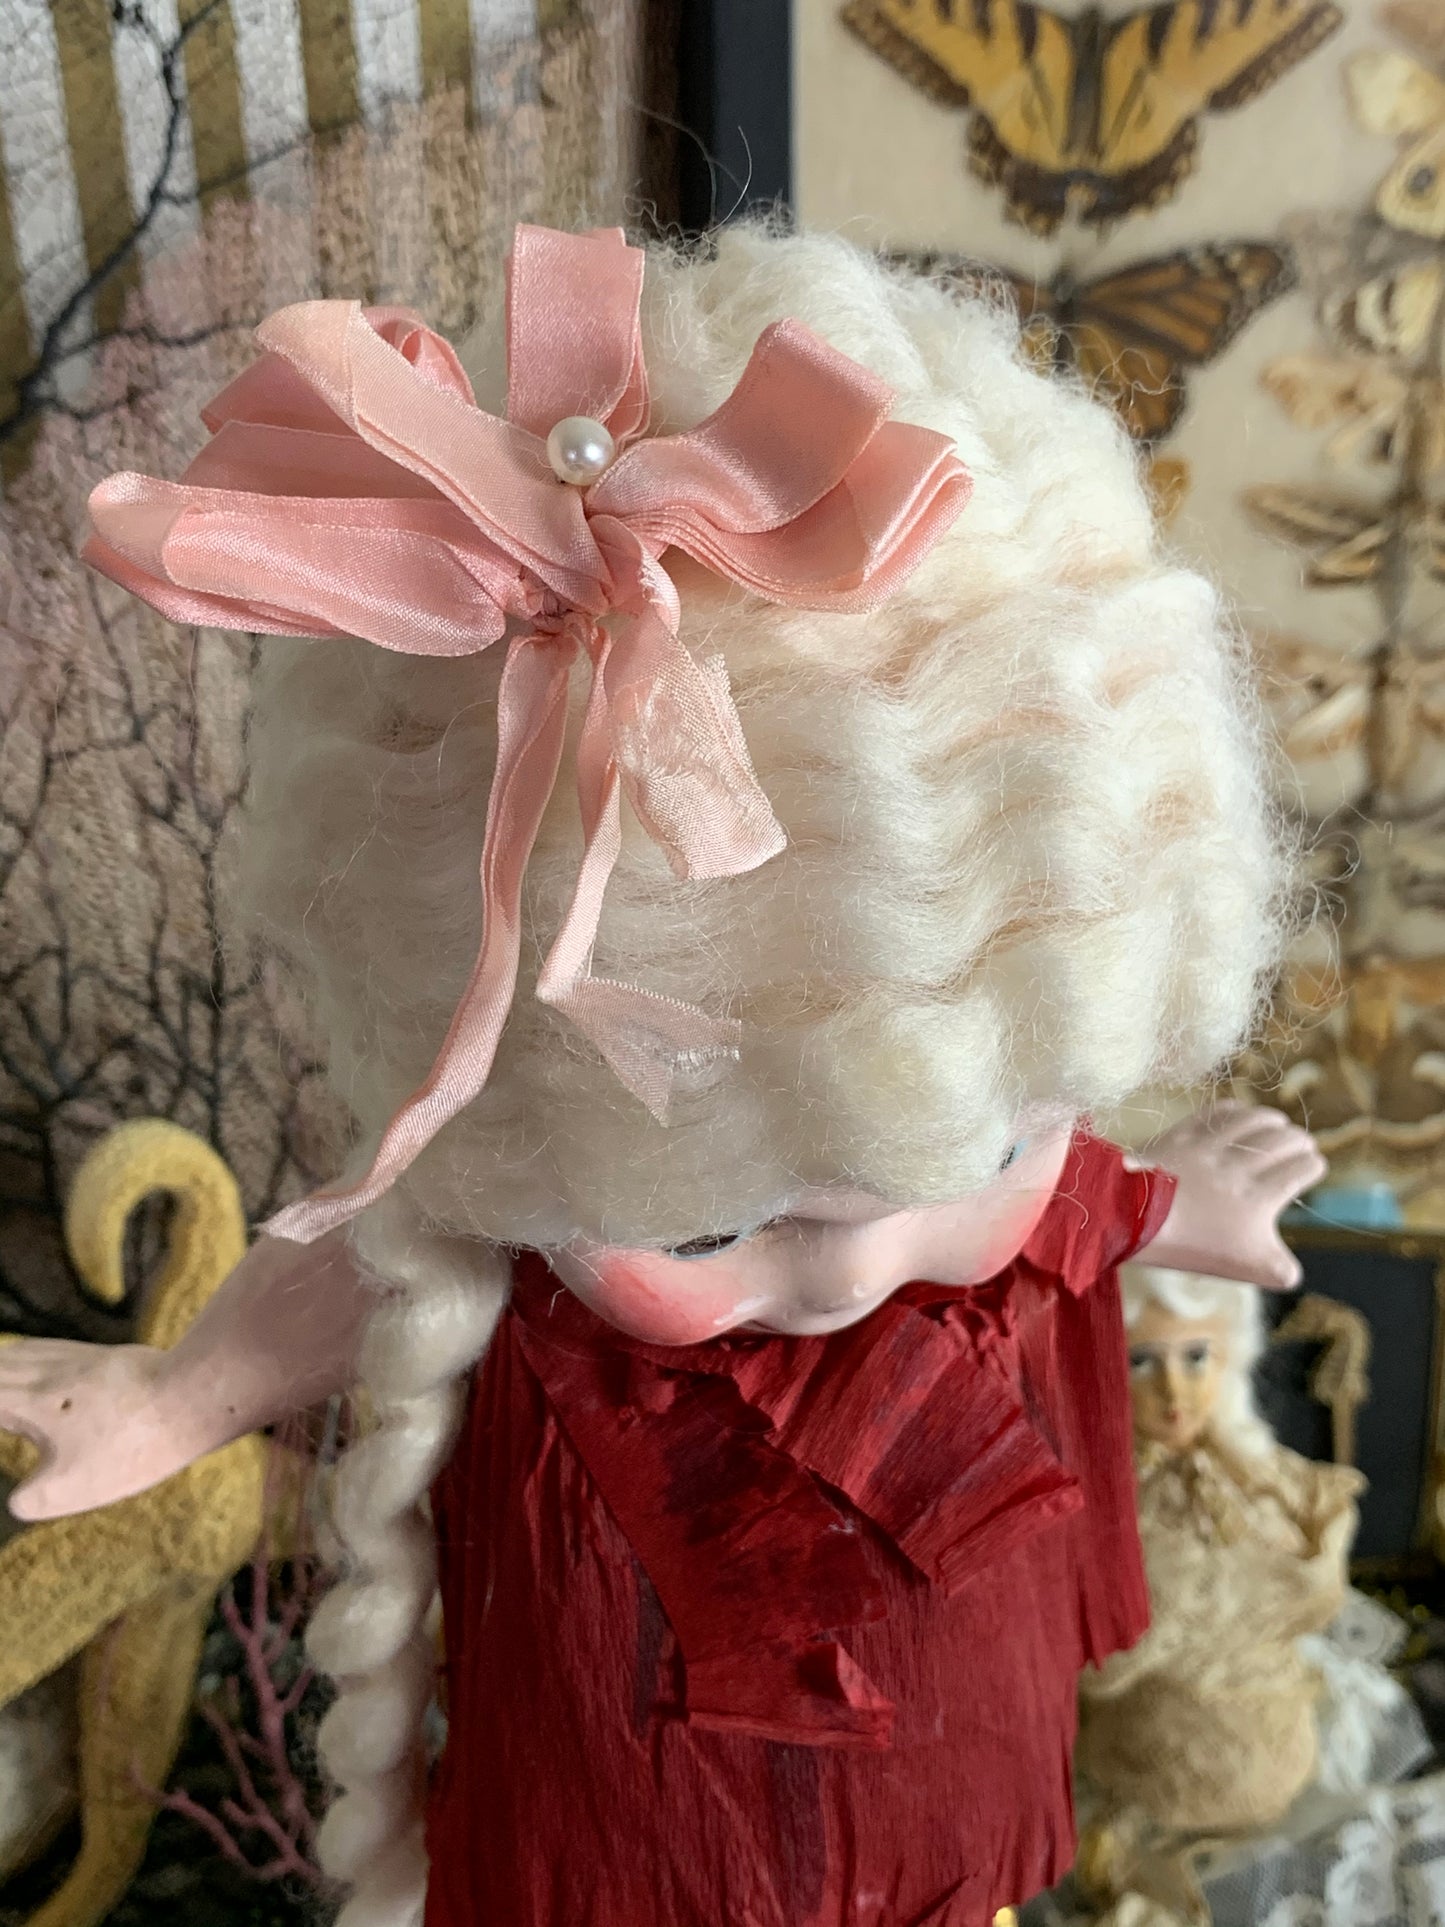 Vintage chalkware flapper kewpie doll